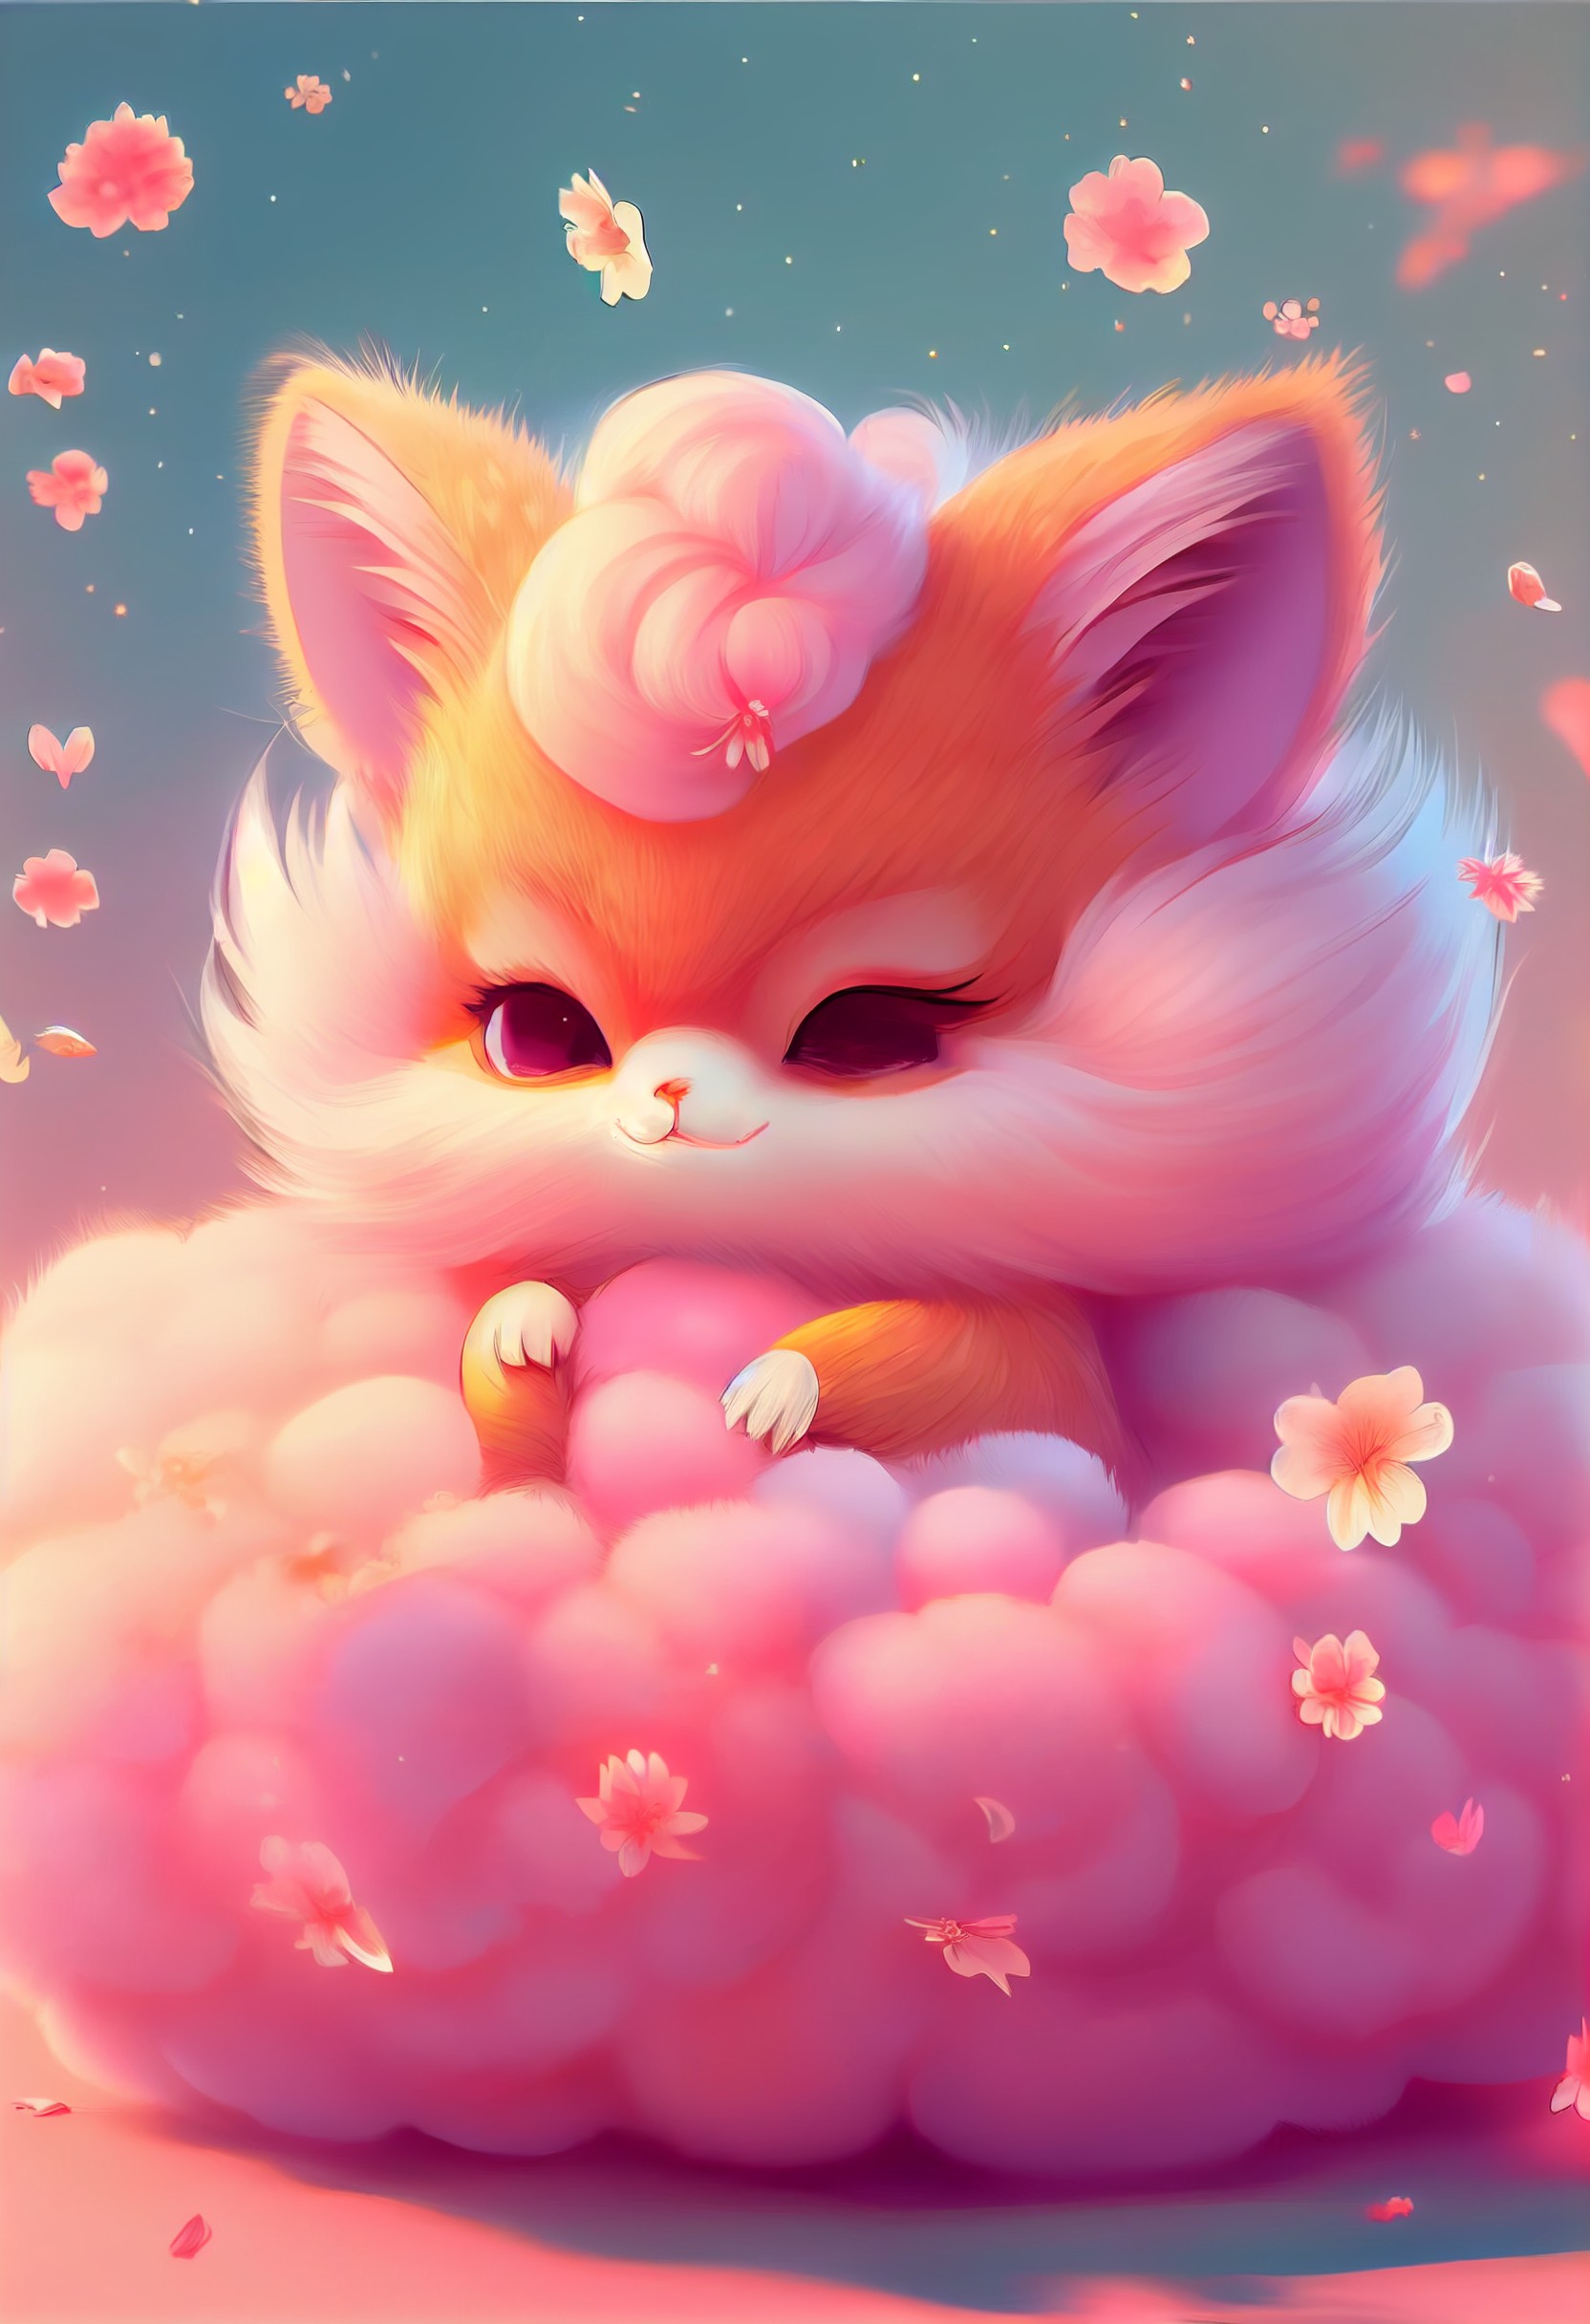 毛茸茸的可爱粉色小狐狸